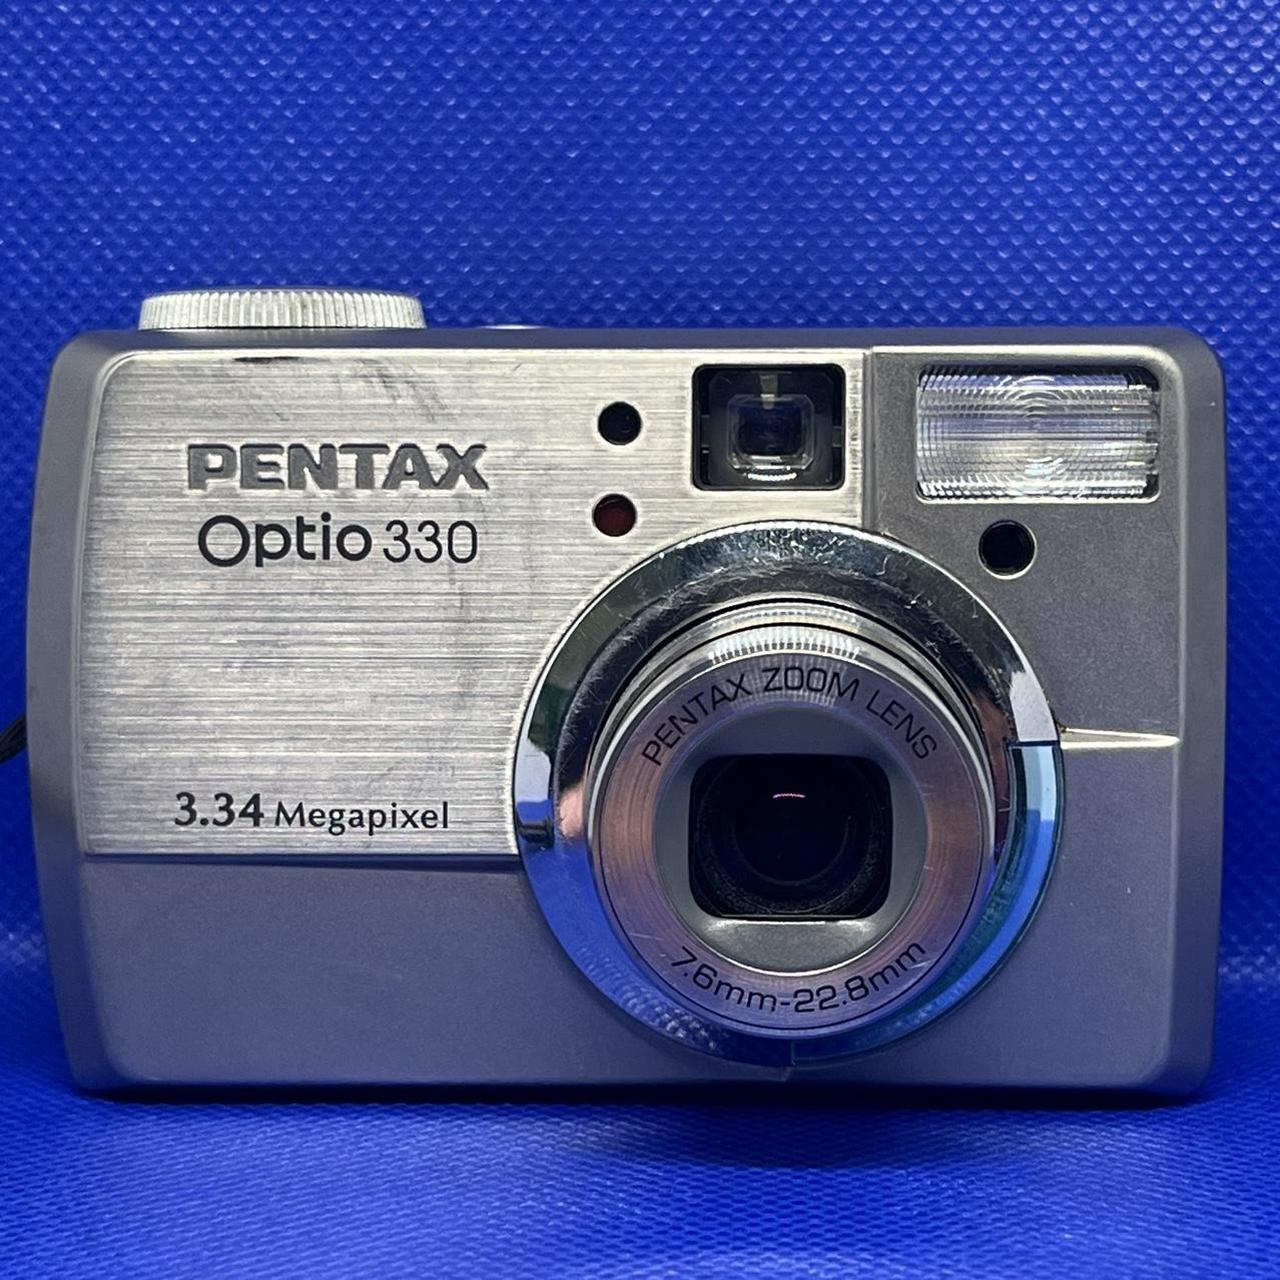 Pentax Optio 330 Digital camera Good condition... - Depop